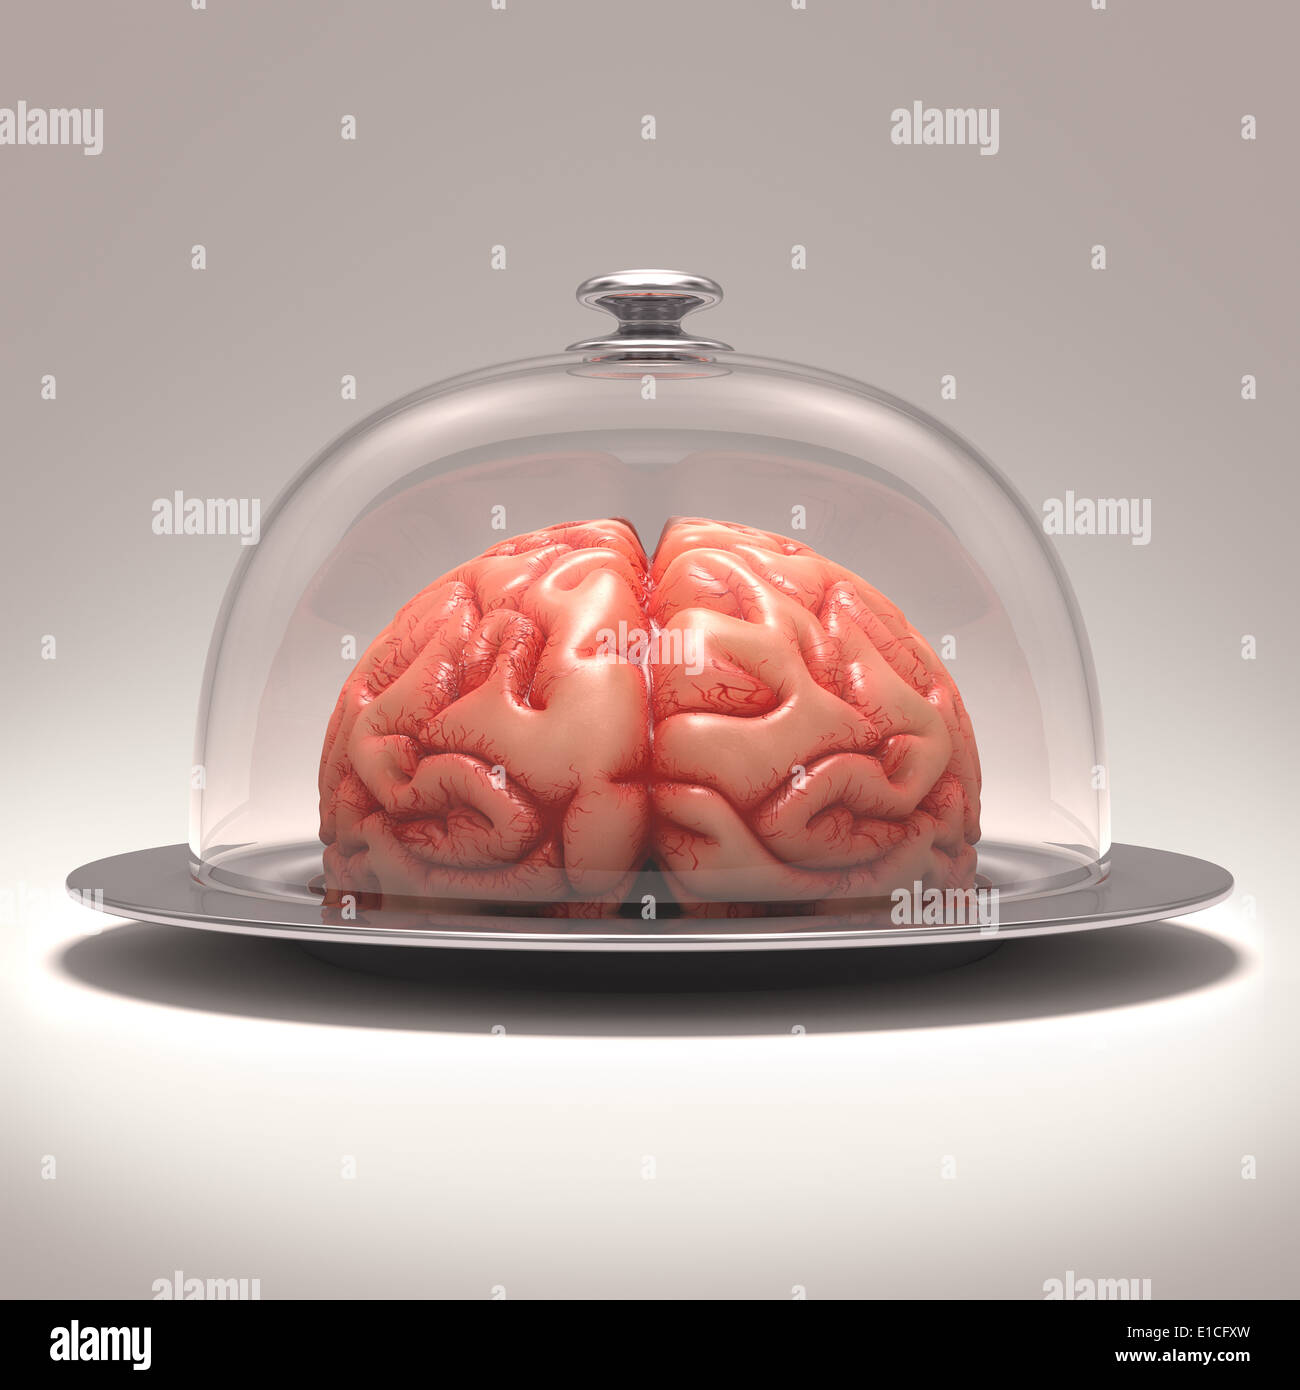 Cerveau sur un plateau en acier inoxydable recouvert d'un couvercle en verre. Chemin de détourage inclus. Banque D'Images